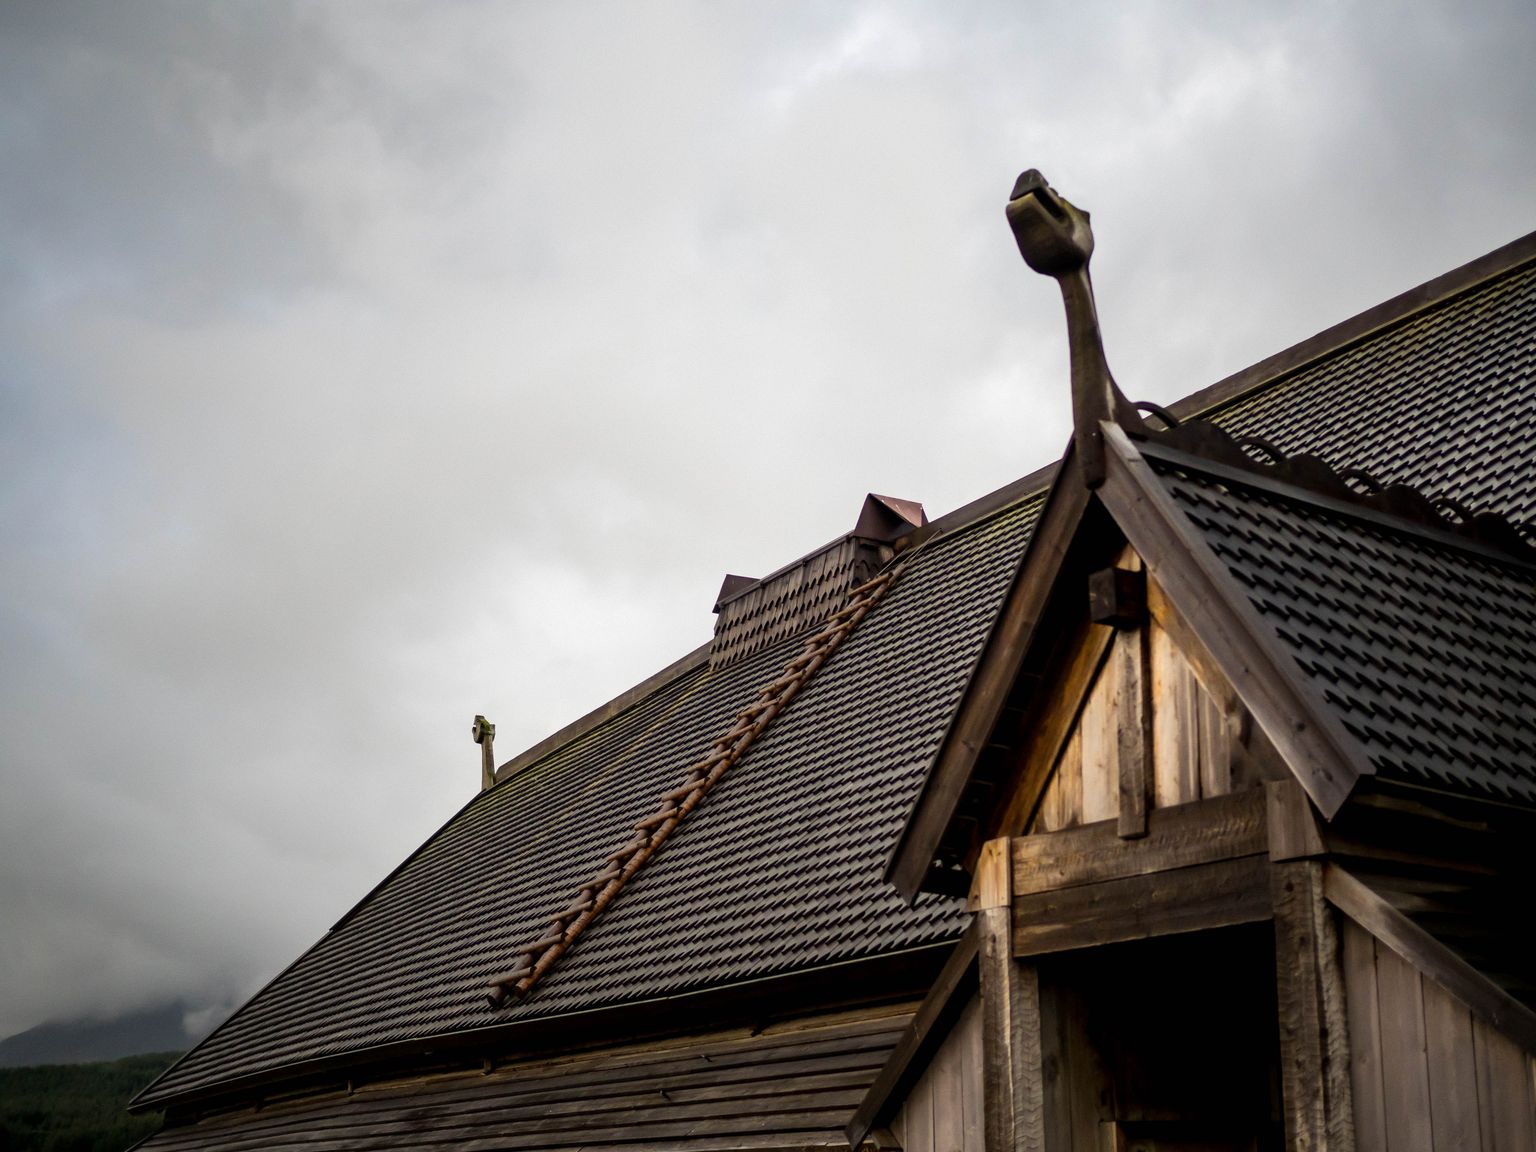 Viikingi pikkmaja rekonstruktsioon. Pilt on illustreeriv